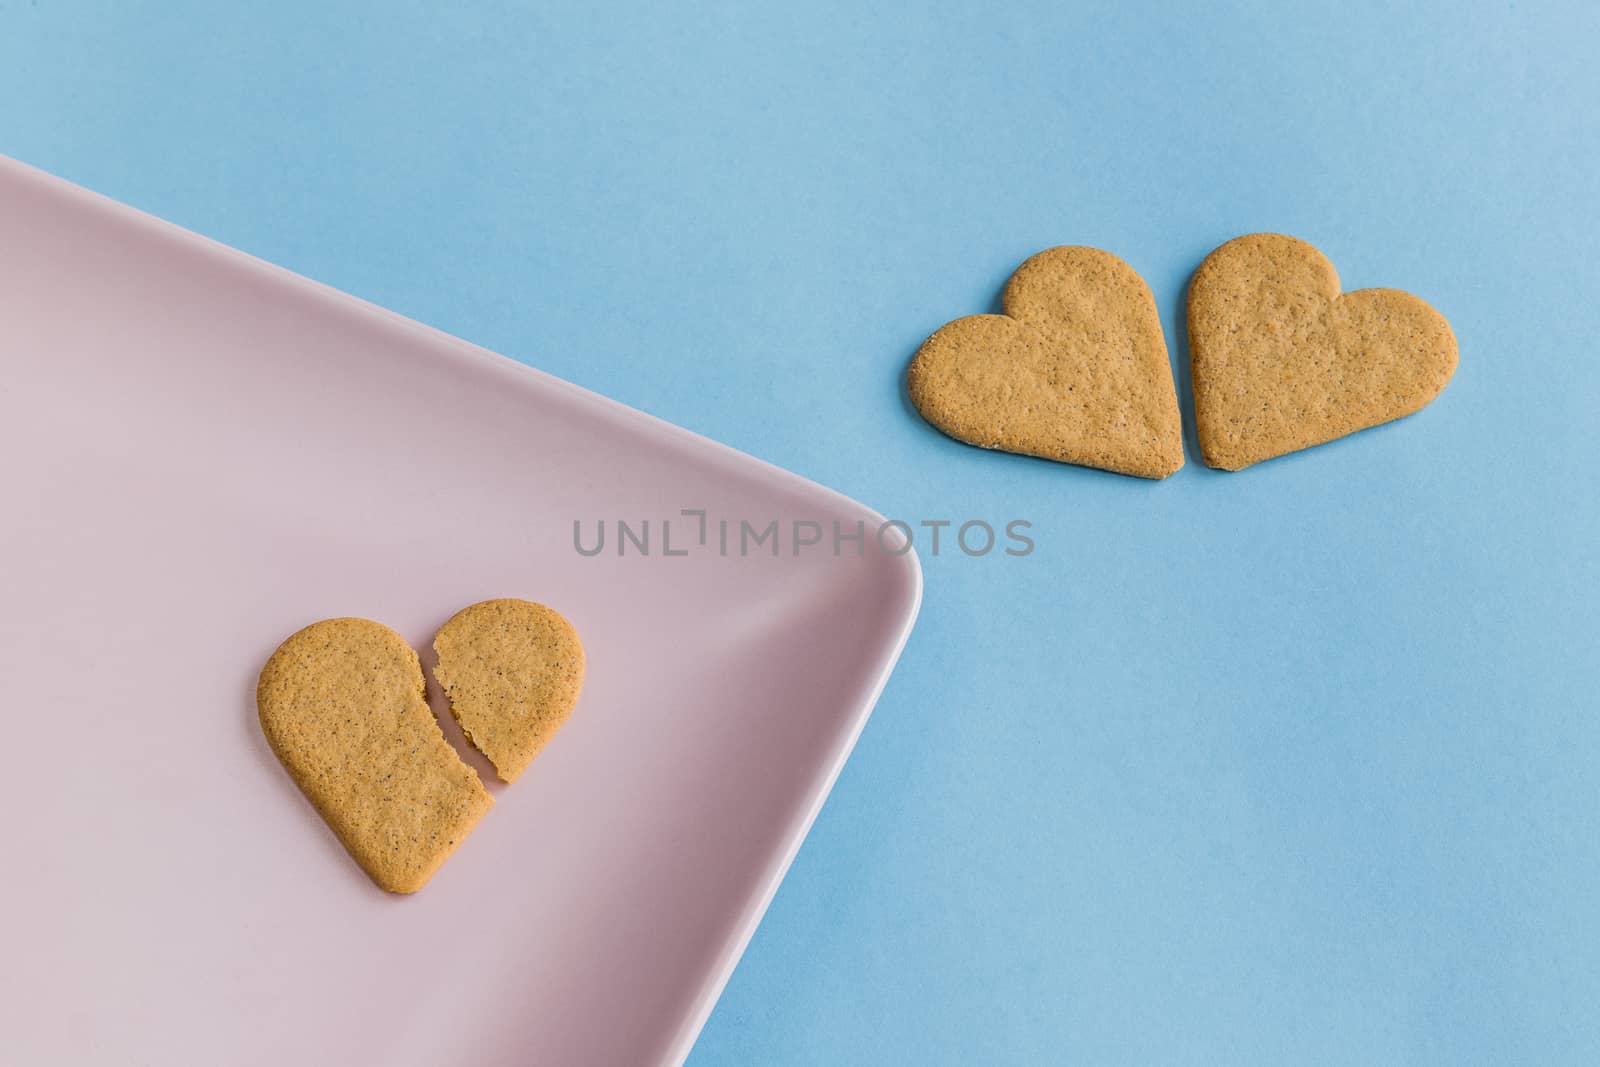 Broken heart. Cookies like a romantic scene. by JRPazos